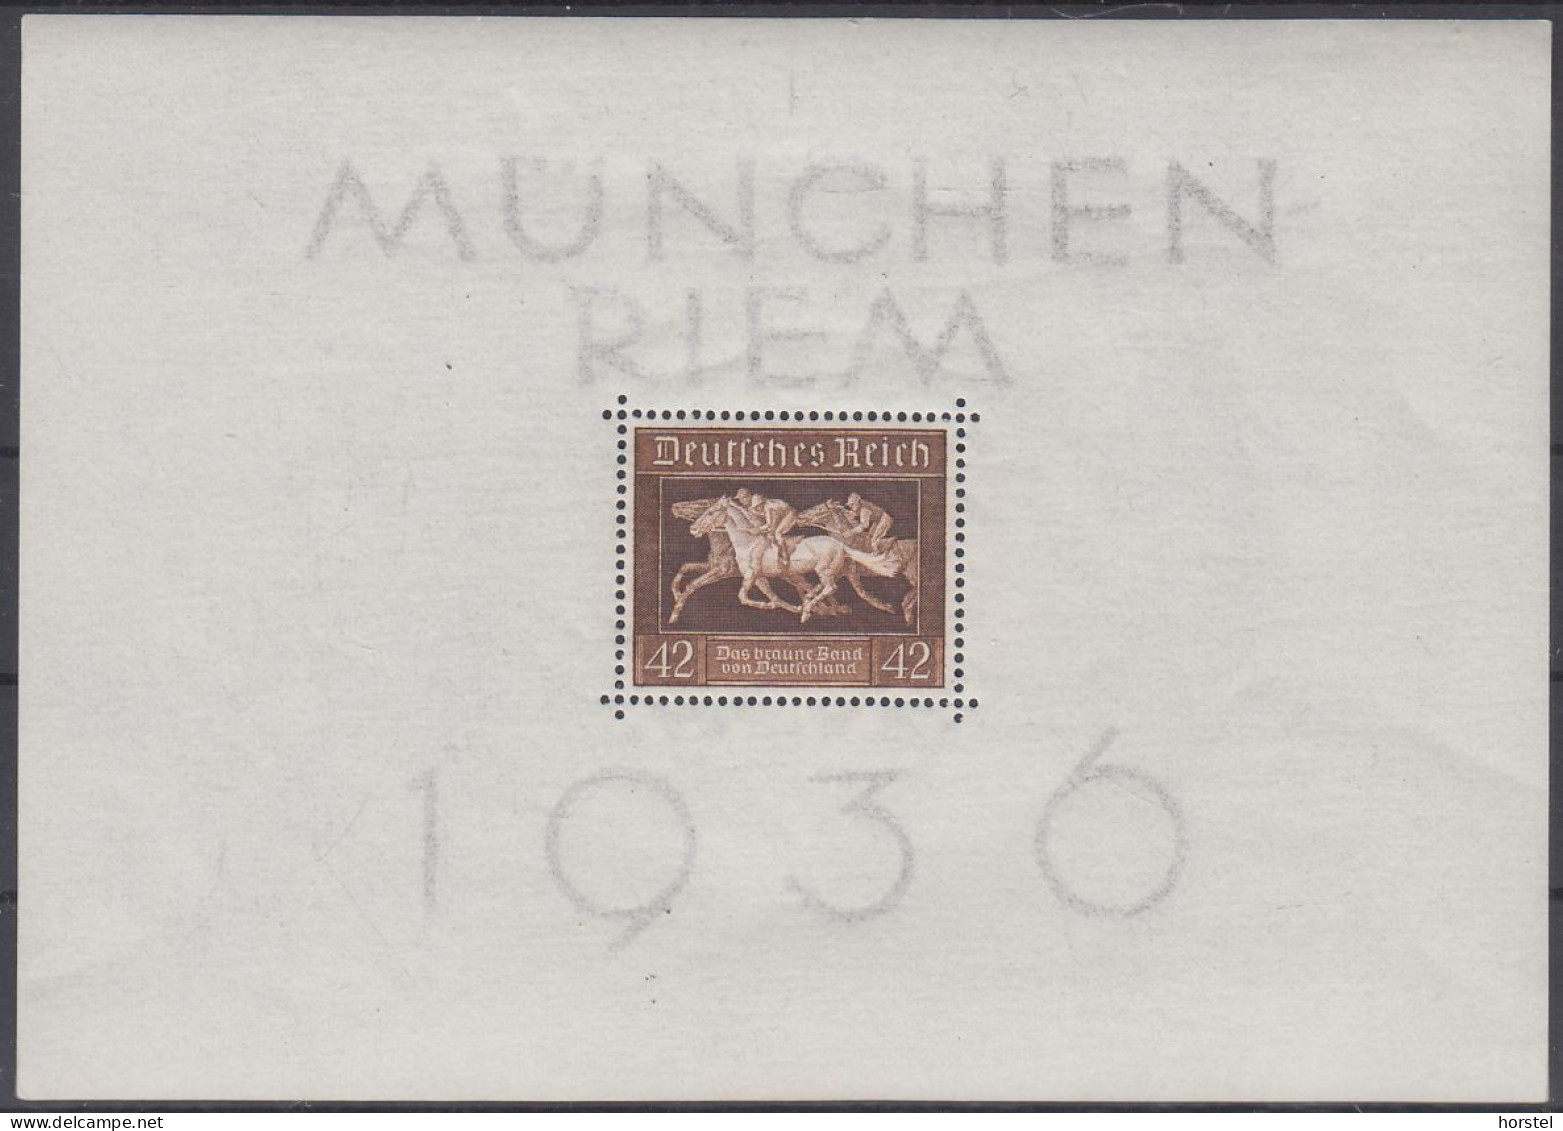 Dt. Reich - Block 4x - Braunes Band 1936 München Riem - Blocs